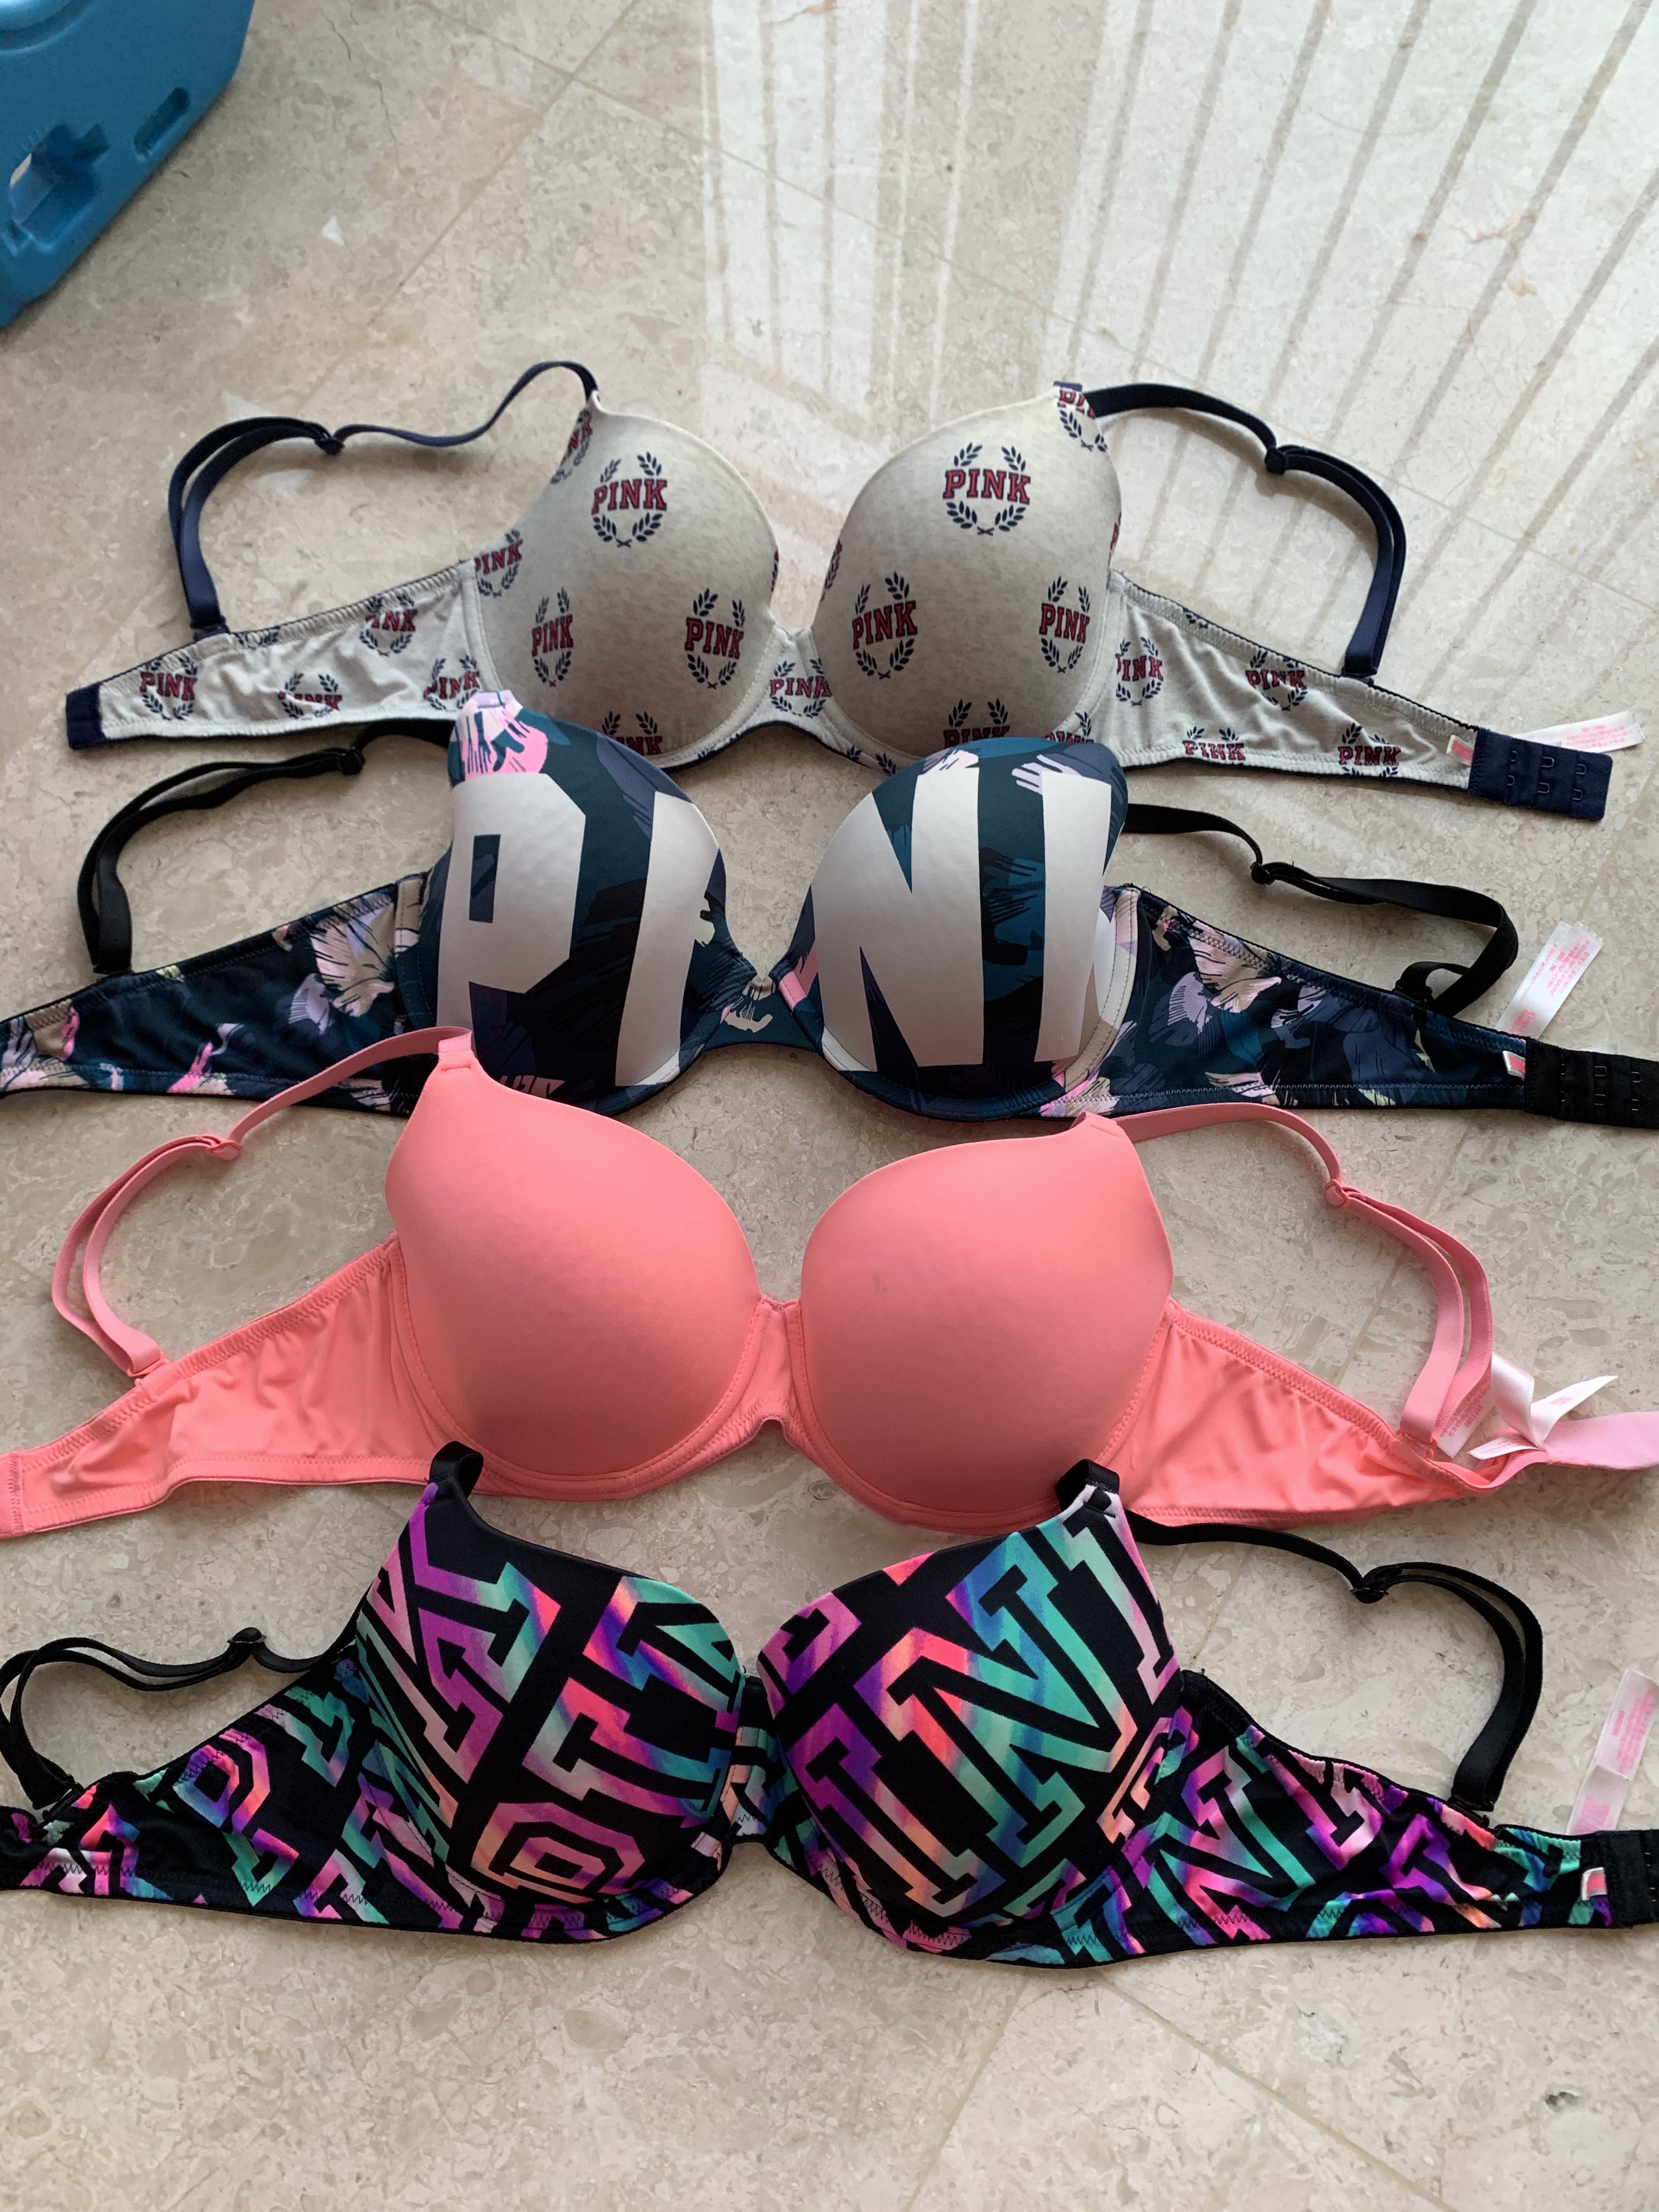 PINK - Victoria's Secret Size 36D Bra Size M - $16 (54% Off Retail